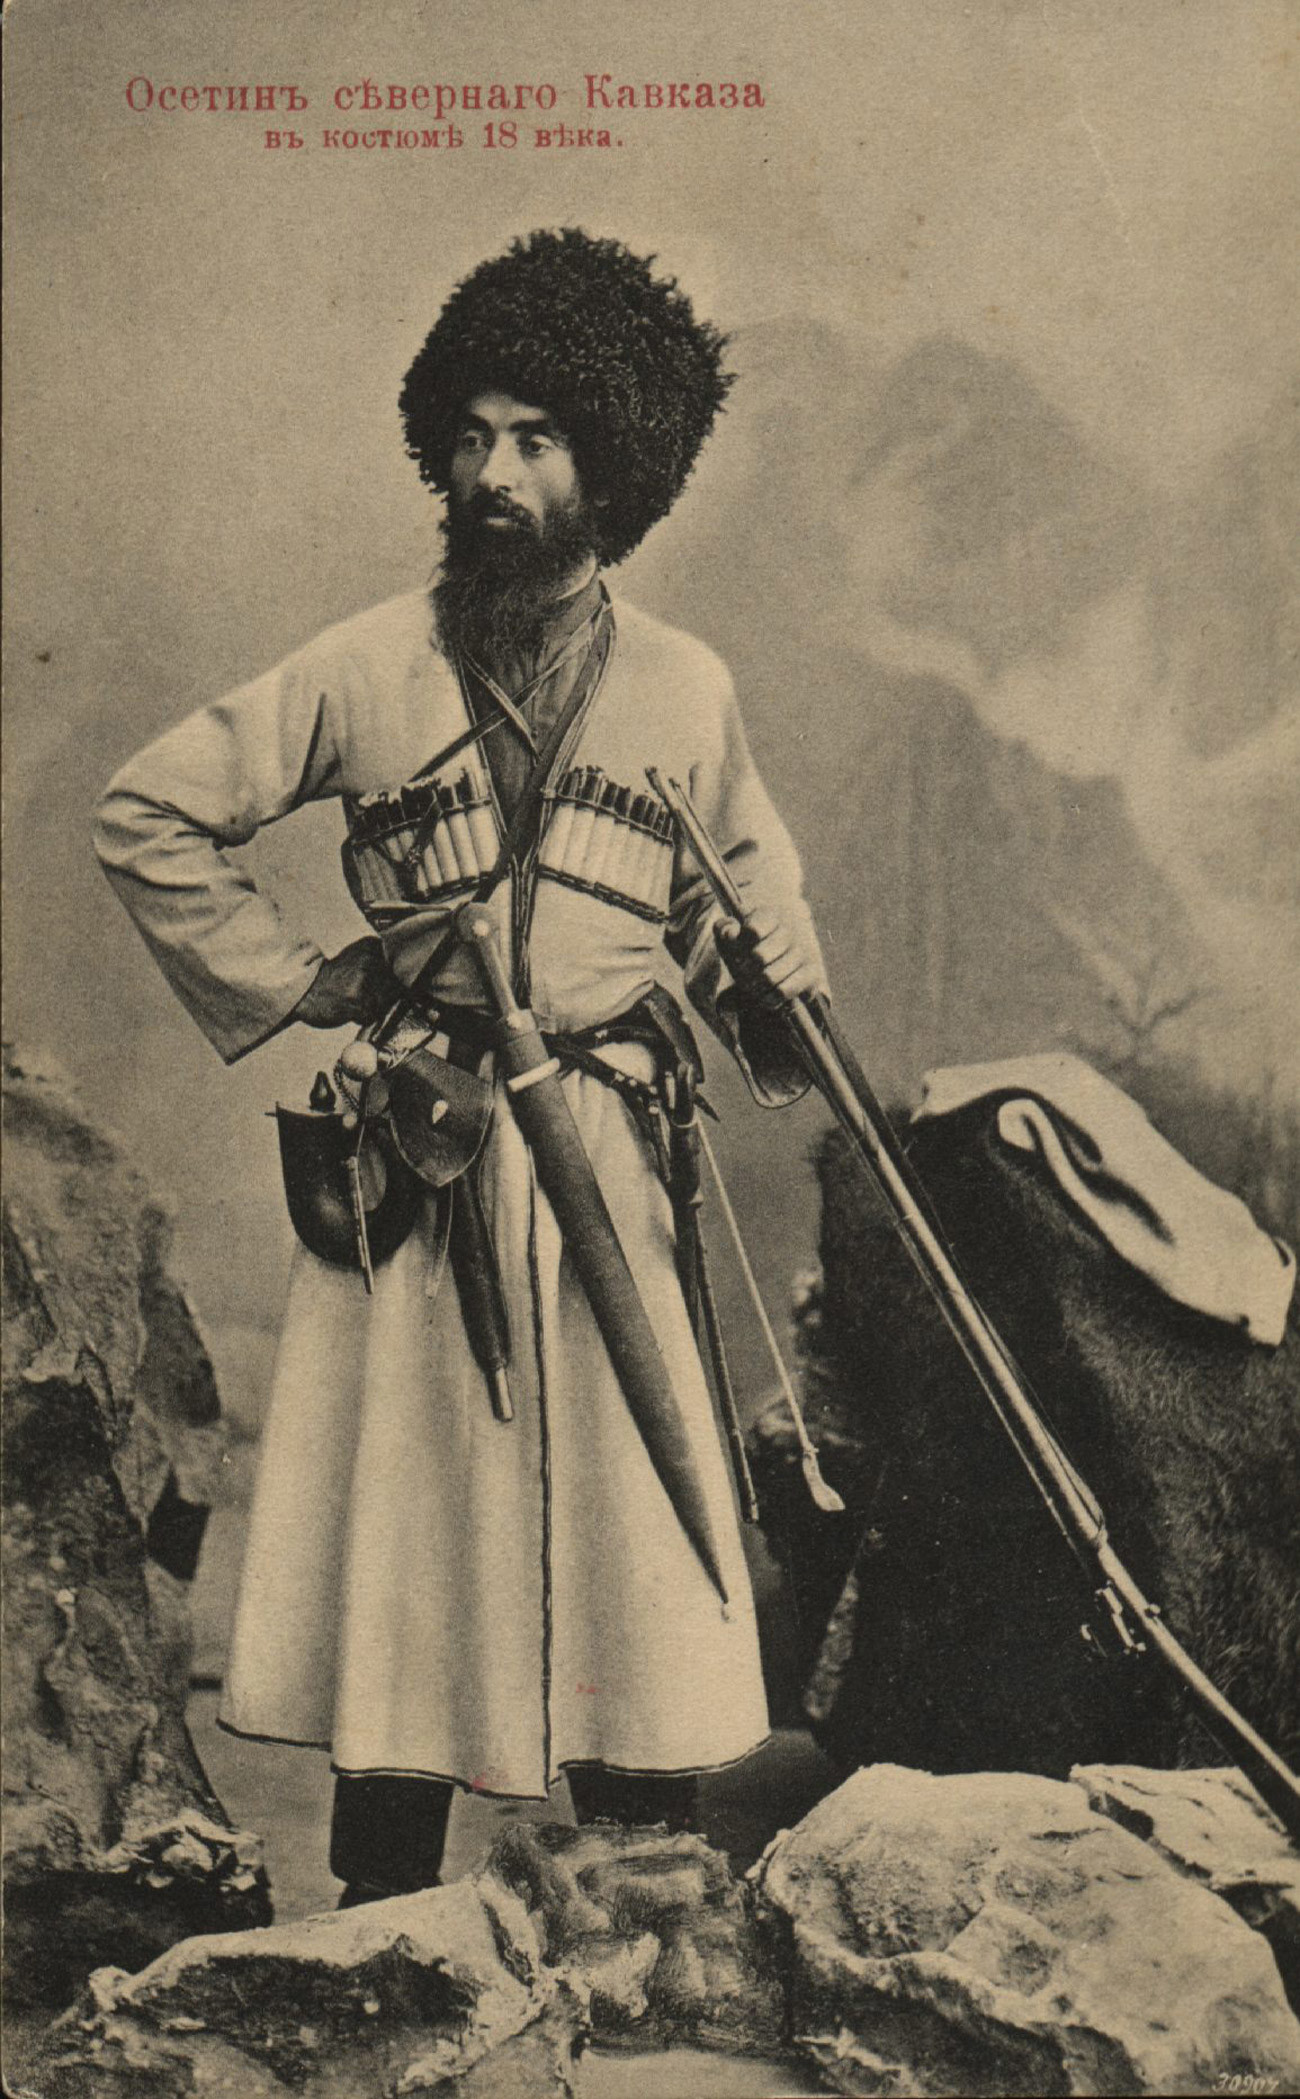 Архивное фото, 19 век.